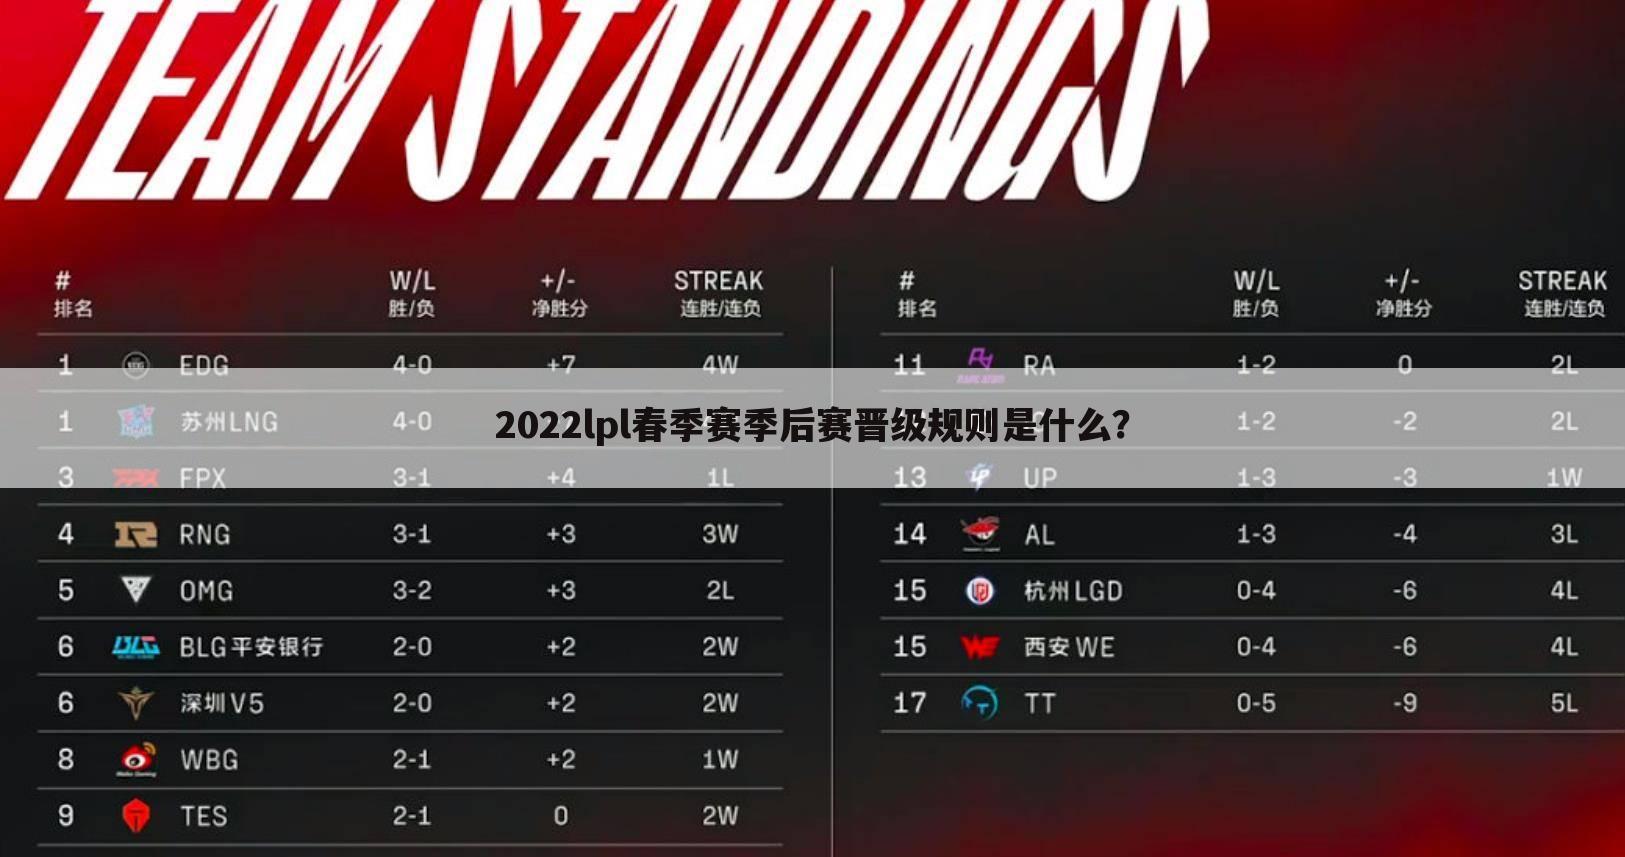 【季后赛排名】2022春季赛季后赛排名